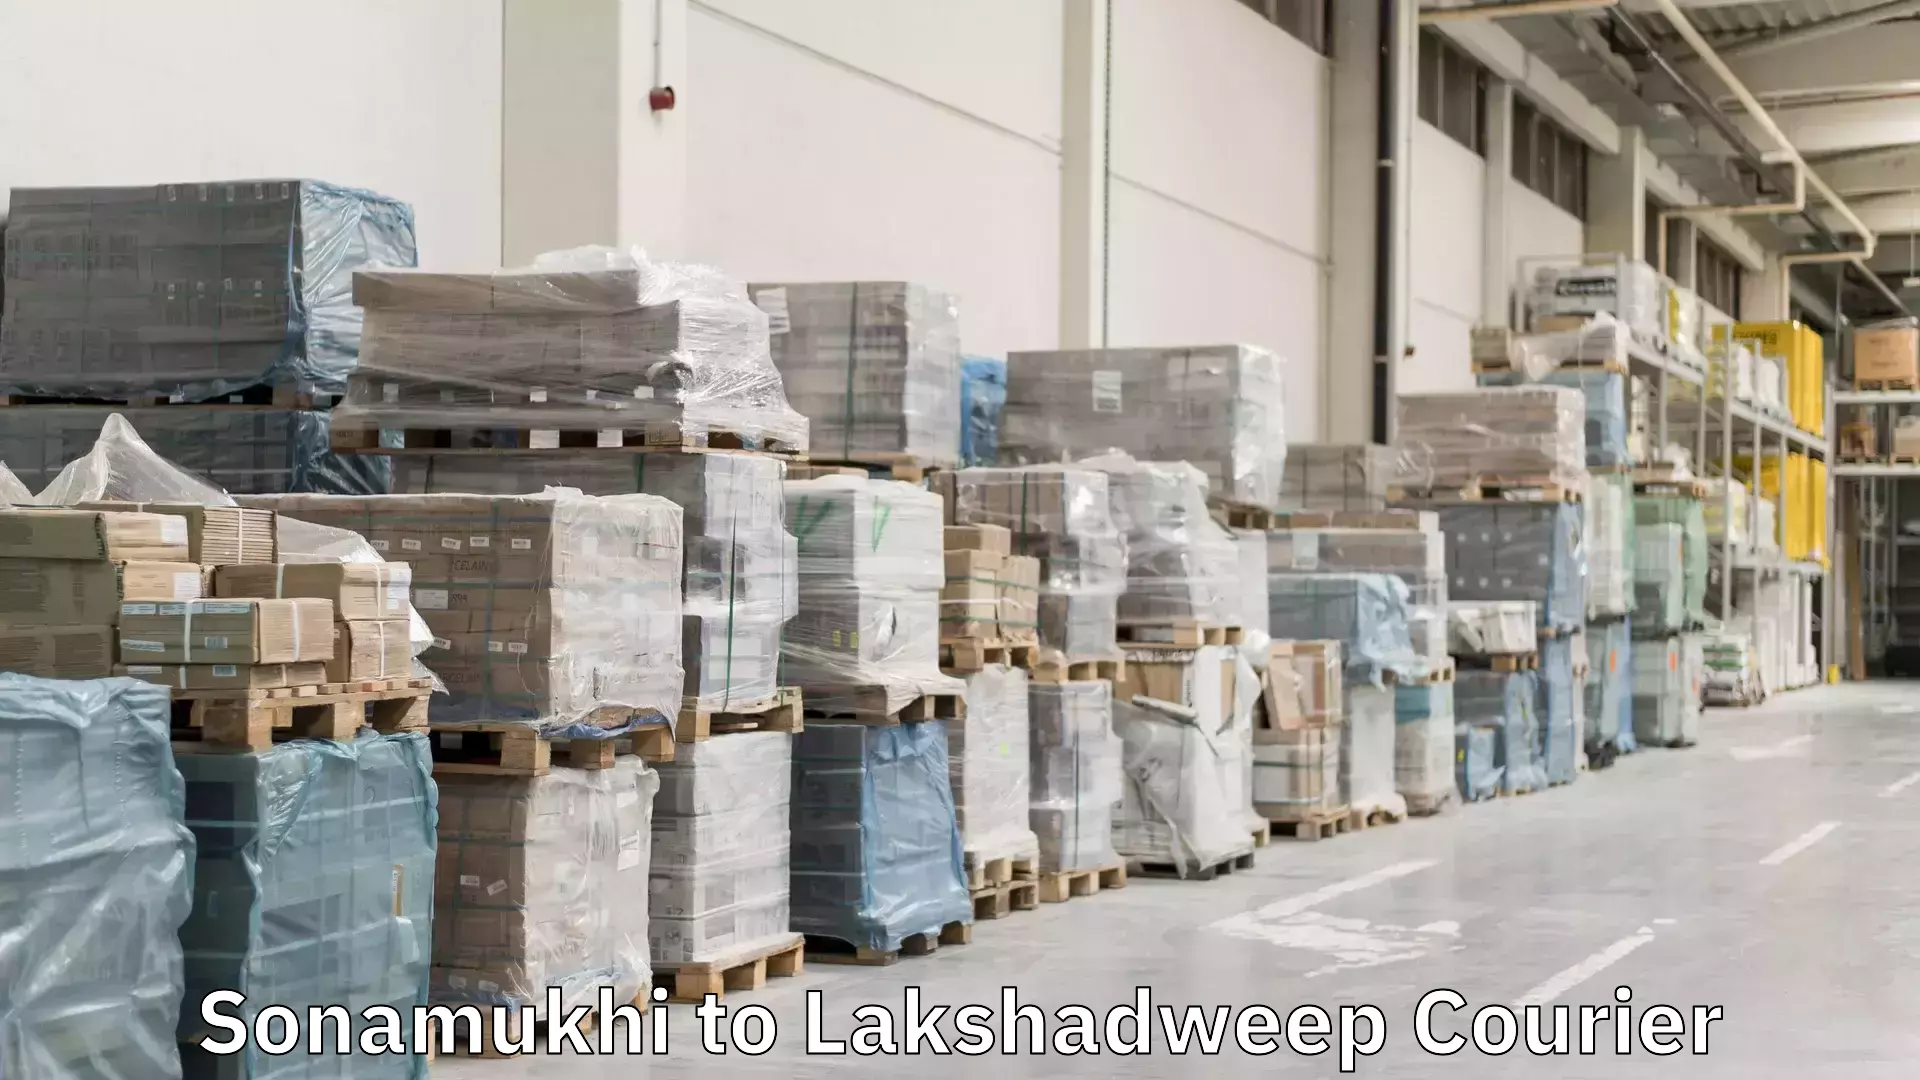 Urgent courier needs Sonamukhi to Lakshadweep